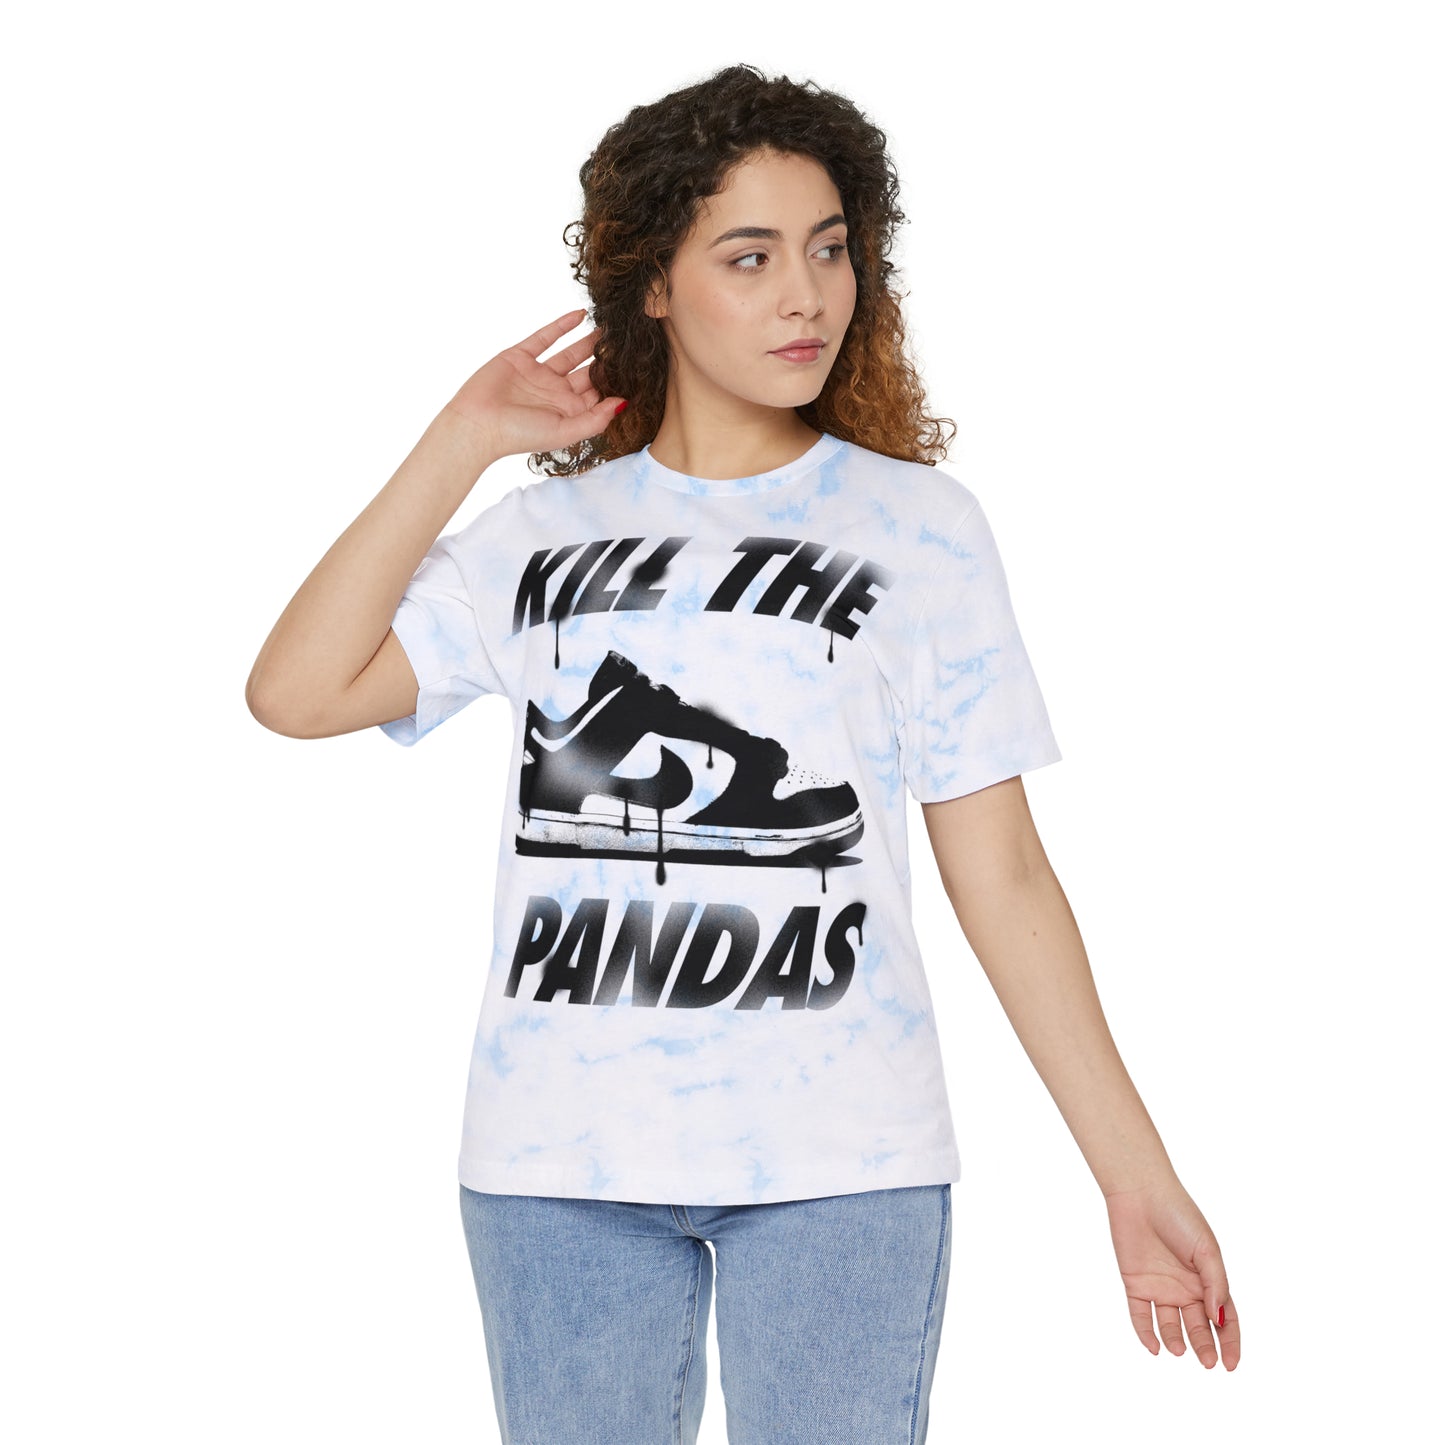 Kill the Pandas tie-dye t-shirt